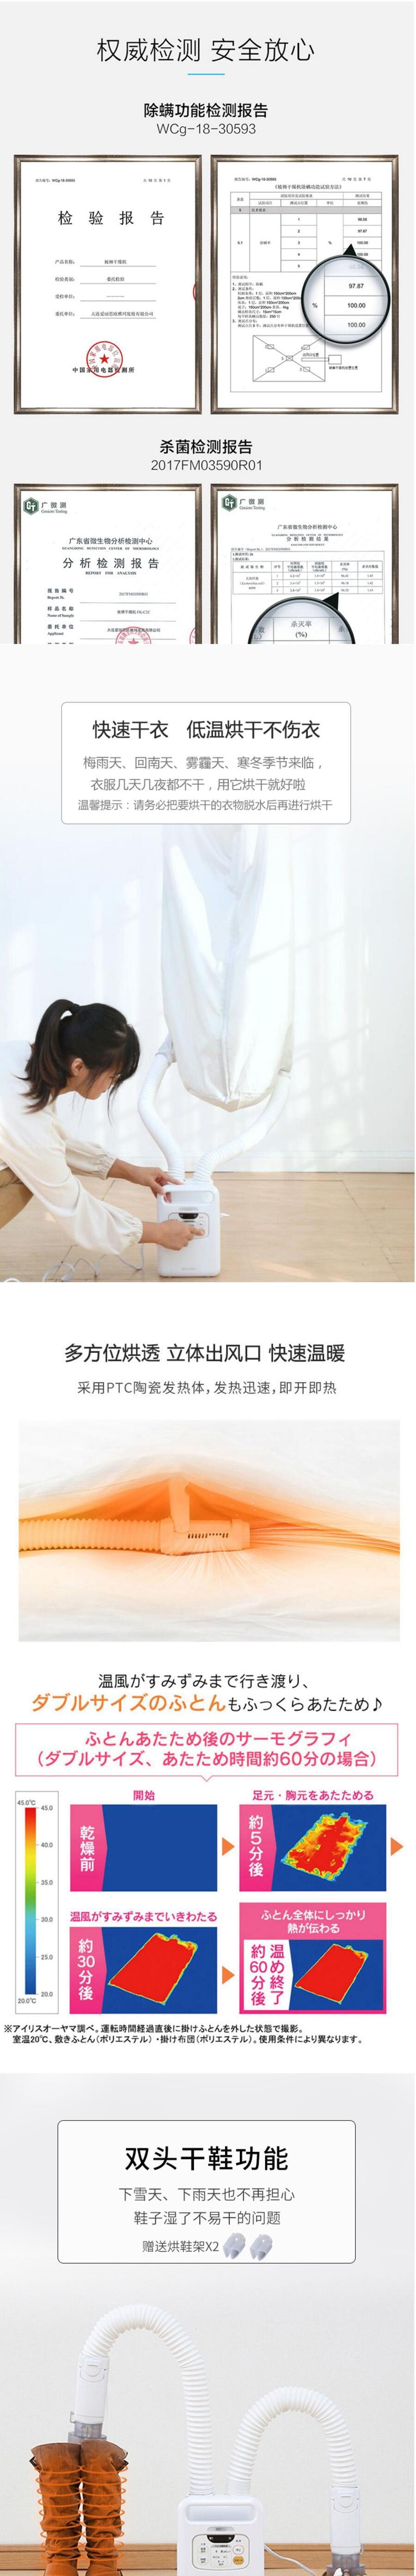 【日本口碑品牌】日本爱丽思Iris烘干机 家用干衣暖被机 高效除湿 被褥烘干 白色 KFK-W1-WP[北美版电压]【加拿大直邮】